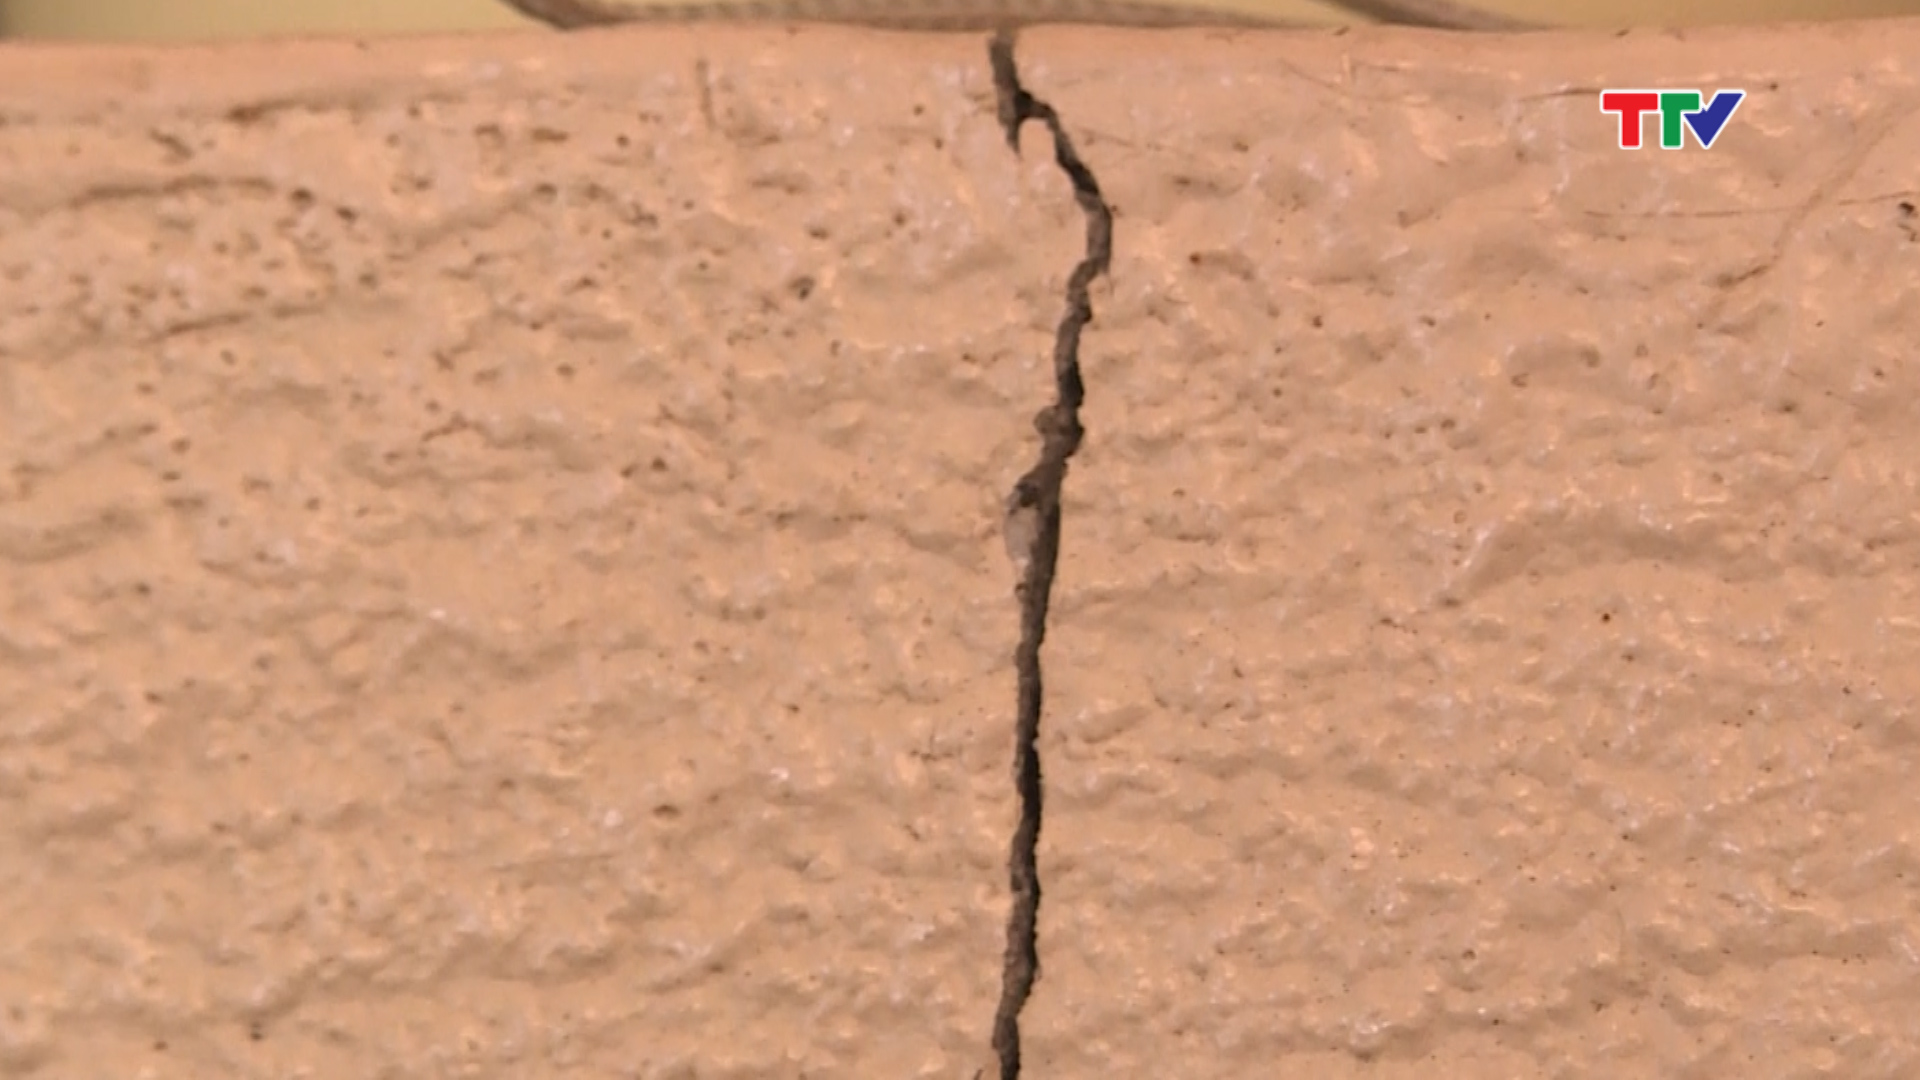 Cùng với sụt lún, trên tường nhà cũng xuất hiện chằng chịt các vết nứt có độ dài khác nhau